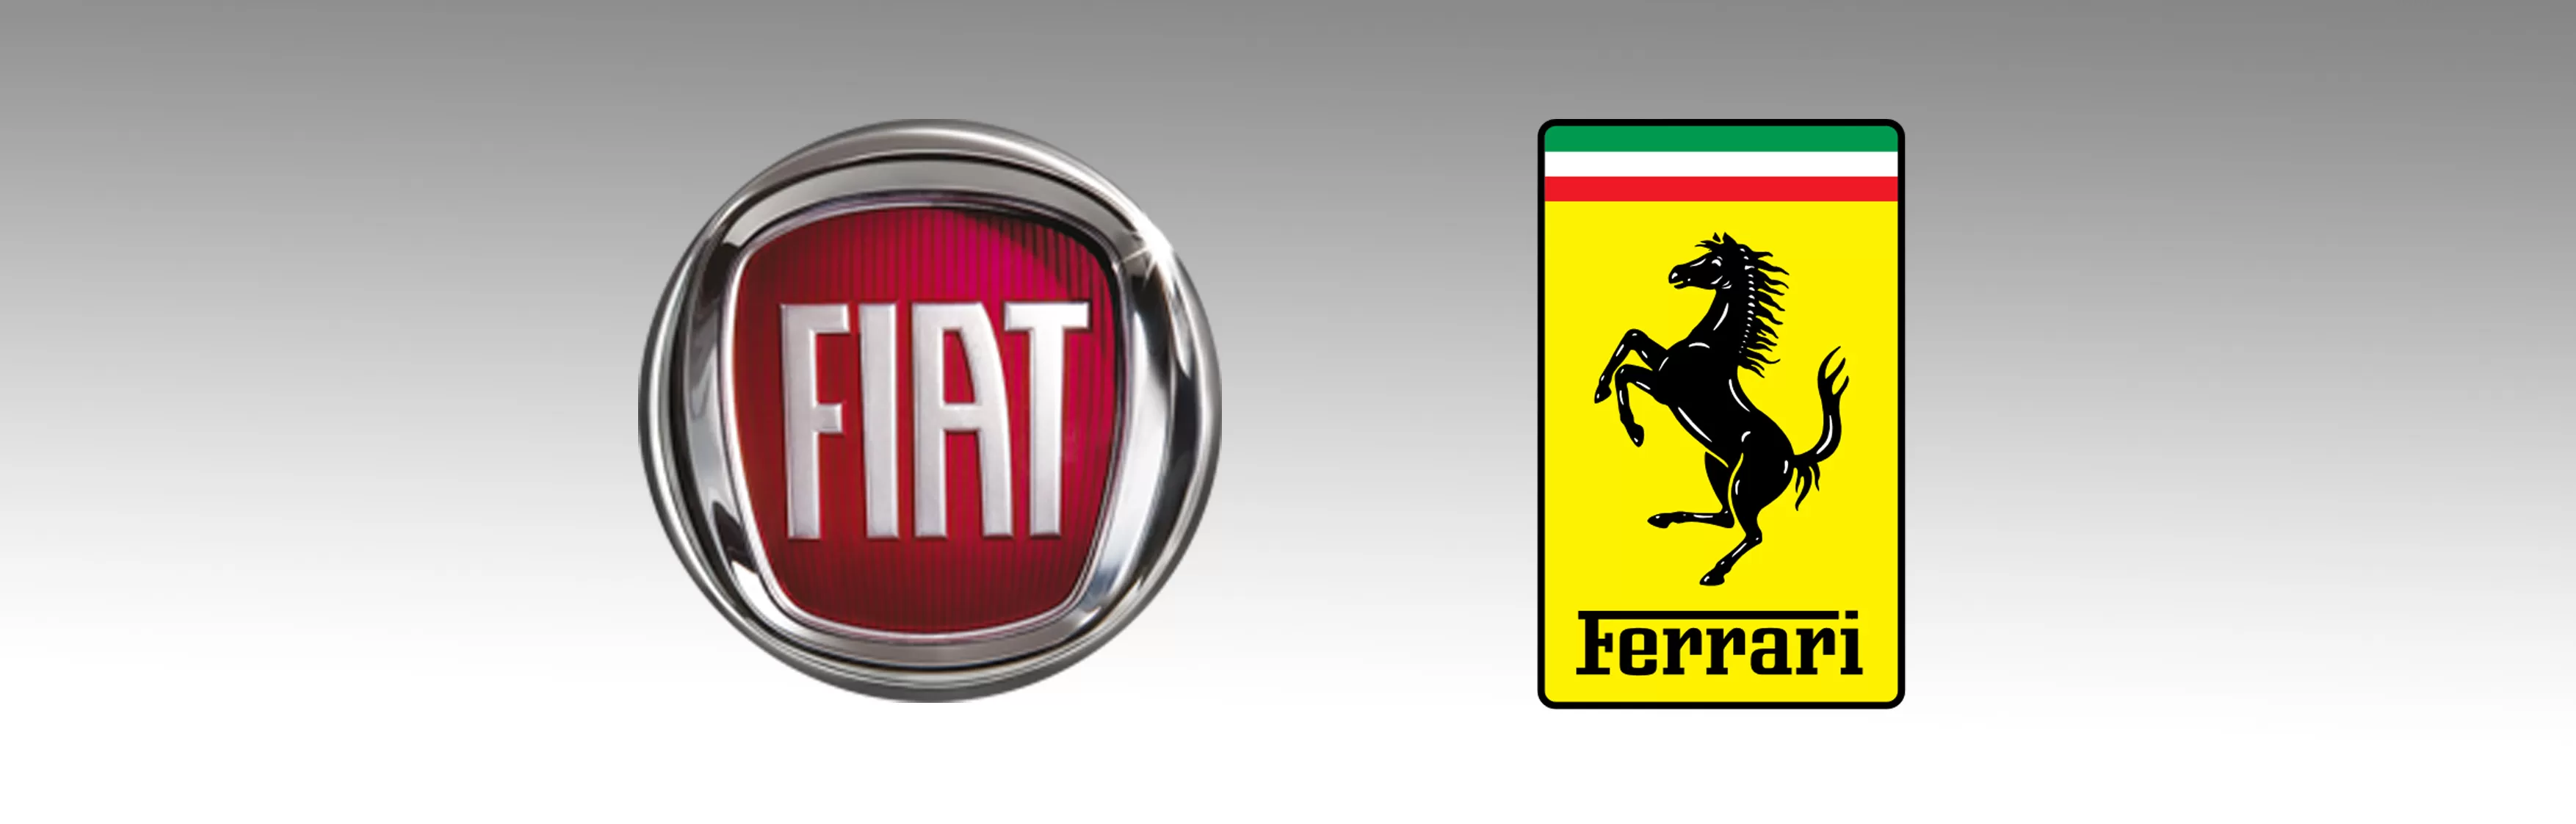 Ferrari-Fiat, il legame è nel nome